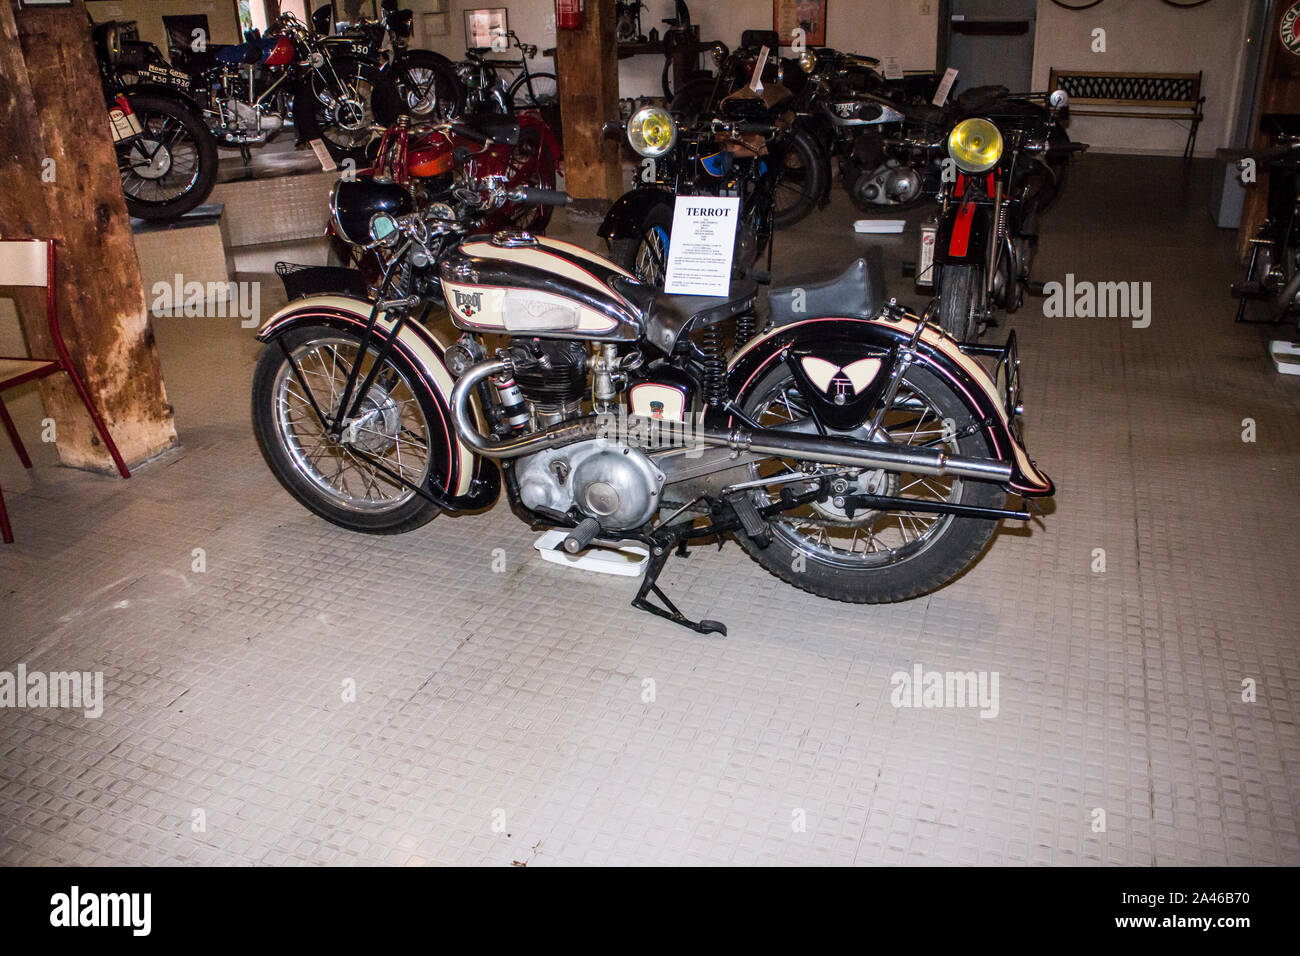 Marseille (France) Musée de la moto - Motorcycle museum : Terrot RSSE 500cc 1938 (French) Stock Photo